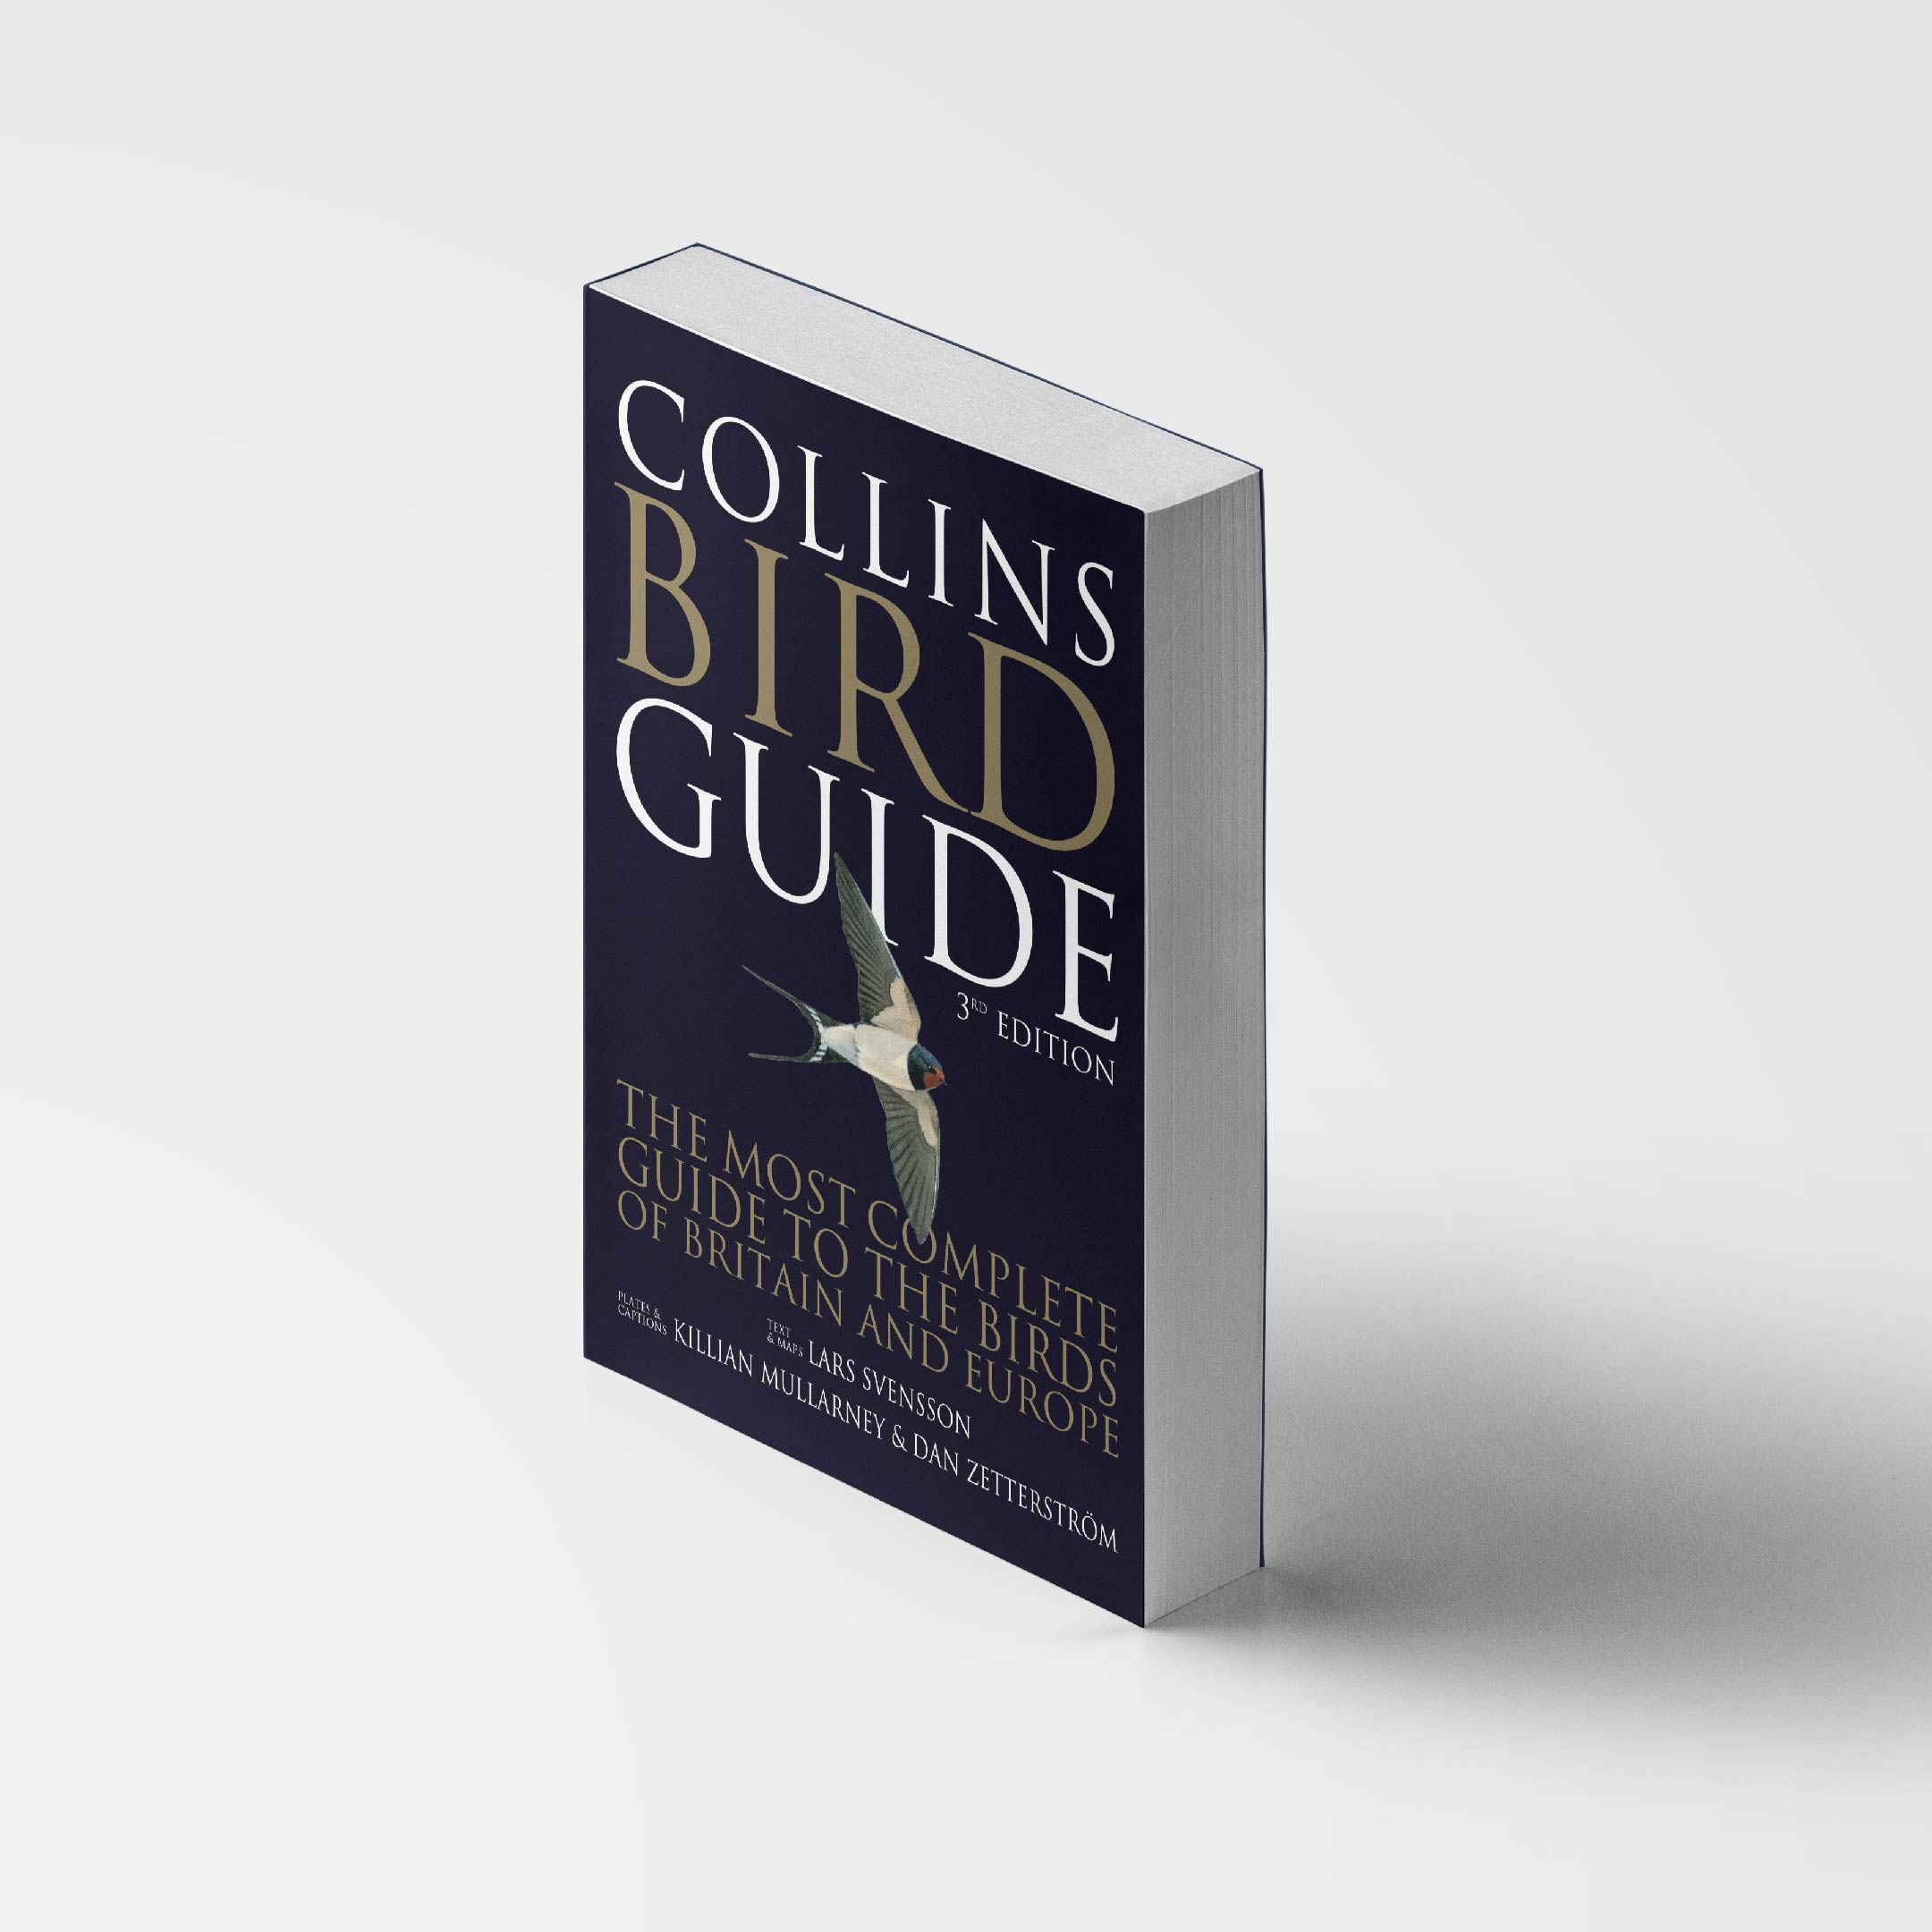 2023 m. lietuviškai pasirodys „Collins Bird Guide“ – išsamiausias Europos paukščių pažinimo gidas